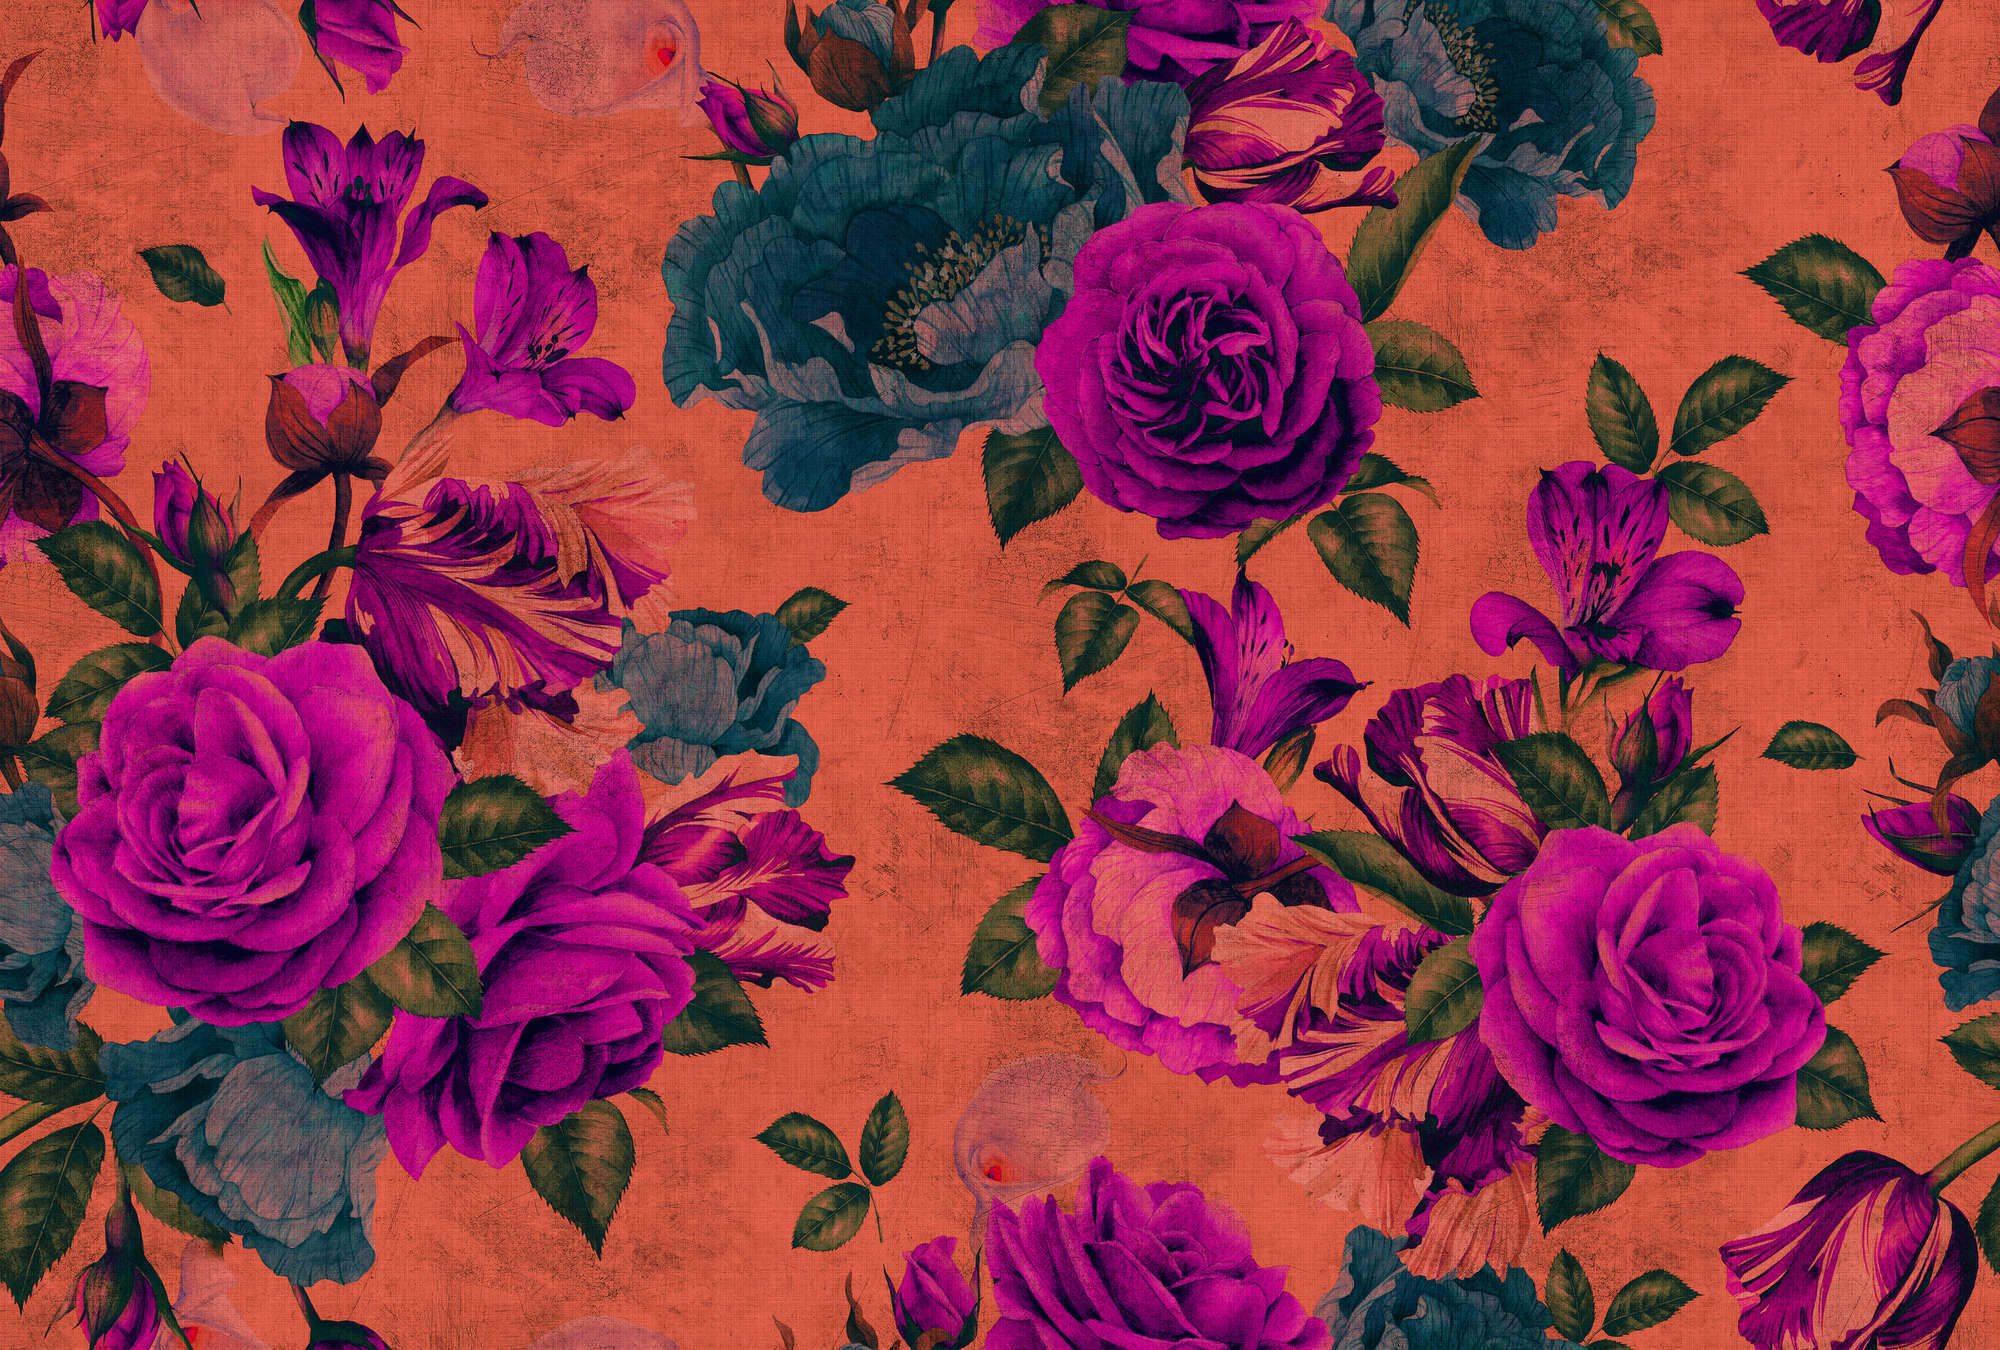             Spanish rose 2 - Carta da parati con petali di rosa, struttura naturale con colori vivaci - Arancione, Viola | Vello liscio opaco
        